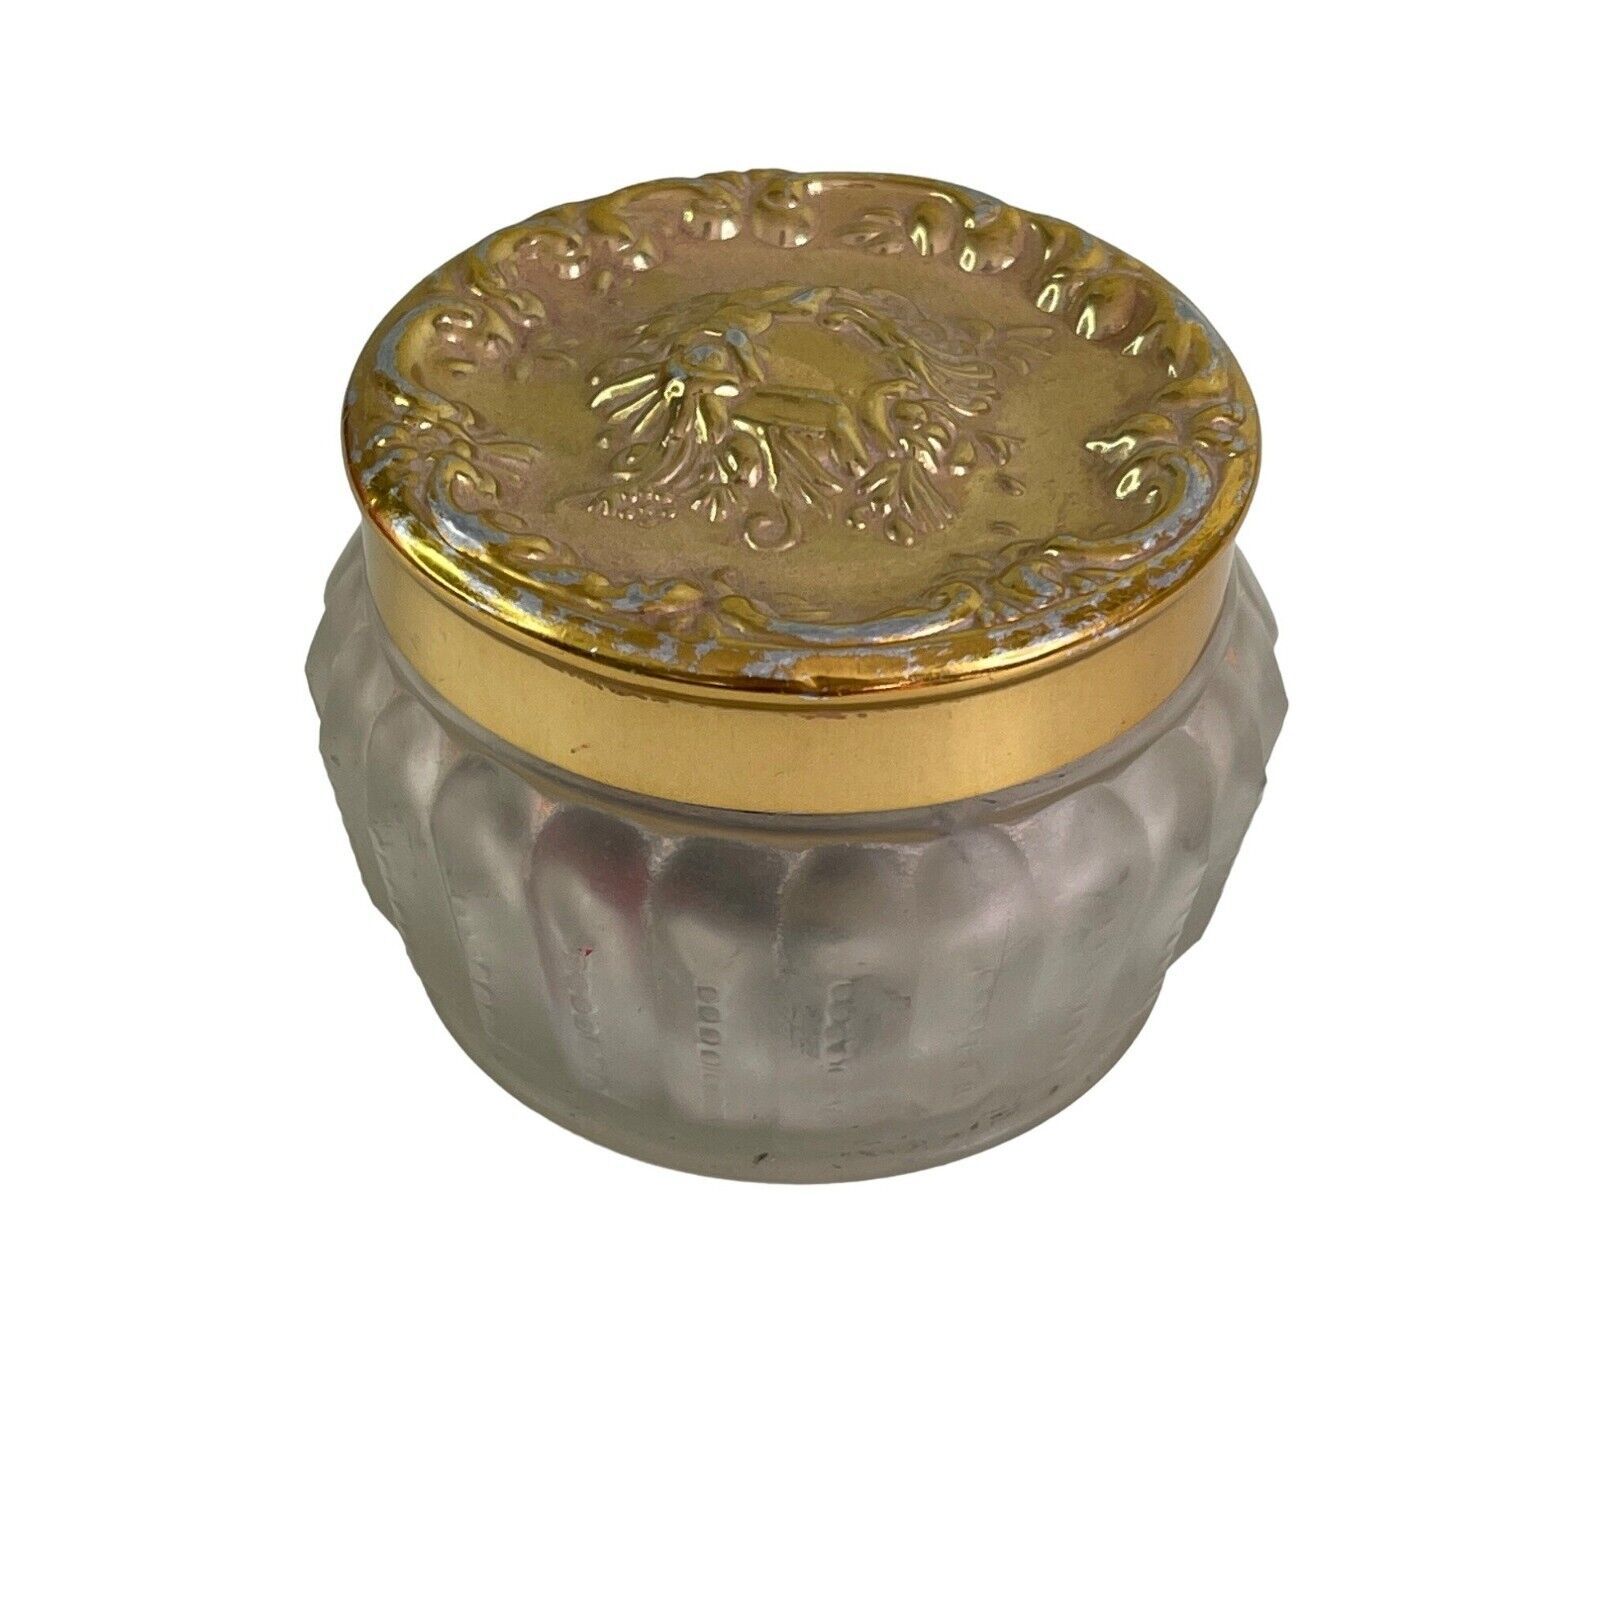 Vintage Estee Lauder Re-Nutriv Face Powder Vanity Jar Frosted Glass Gold Tone Li - $28.05